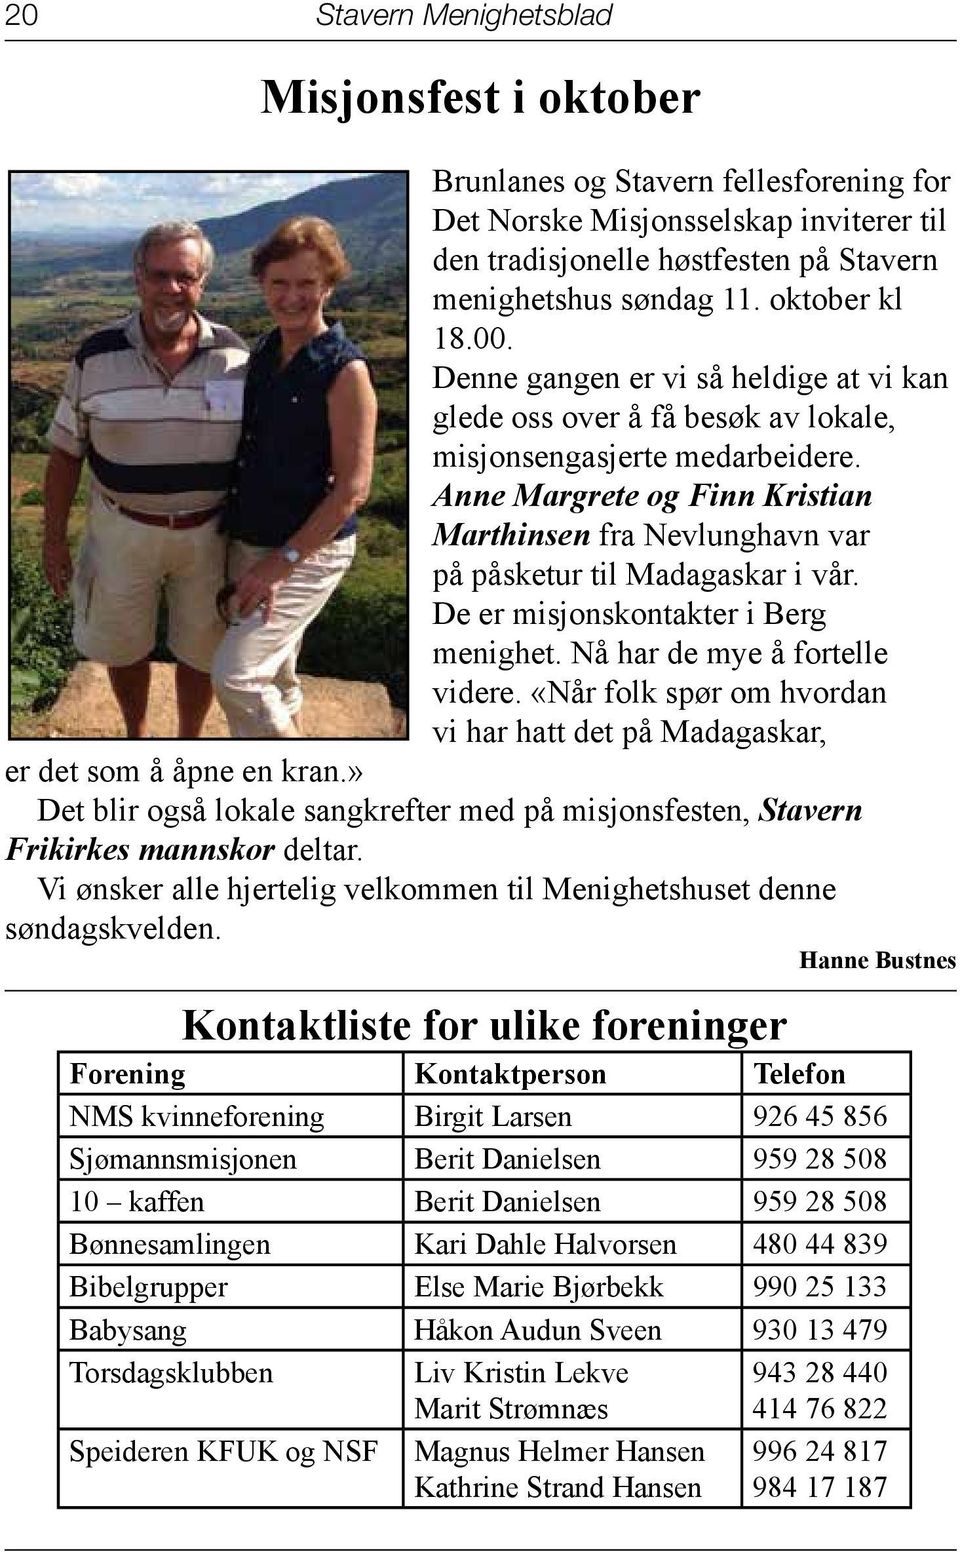 Anne Margrete og Finn Kristian Marthinsen fra Nevlunghavn var på påsketur til Madagaskar i vår. De er misjonskontakter i Berg menighet. Nå har de mye å fortelle videre.